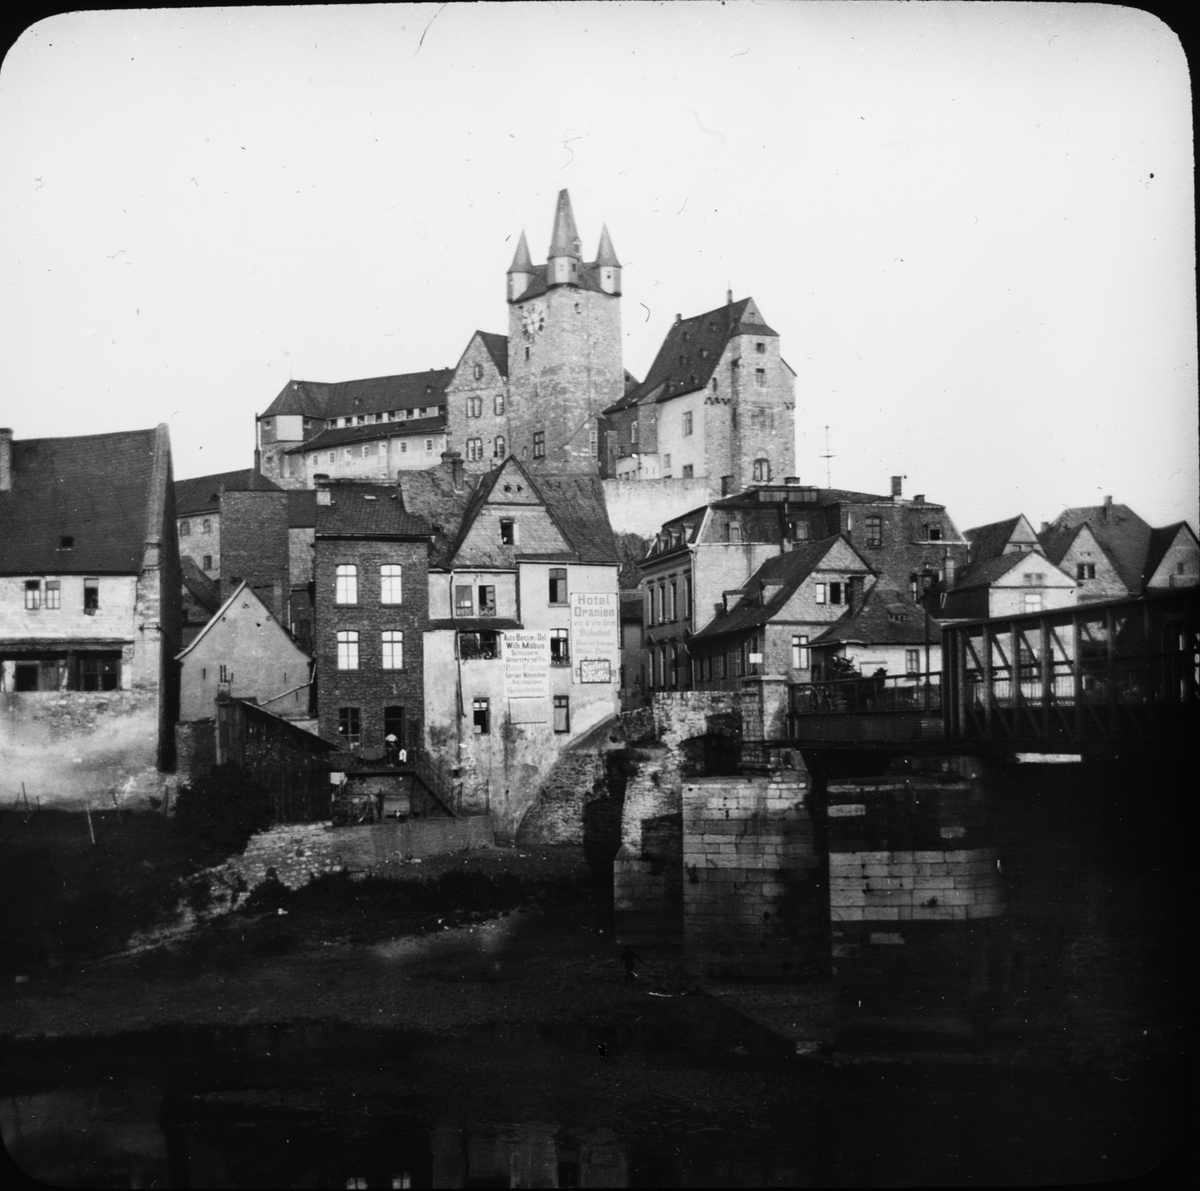 Skioptikonbild med motiv av vy över Diez med borgen.

Bilden har förvarats i kartong märkt: Resan 1908. Amberg. XXX. Text på bild: "Dietz".